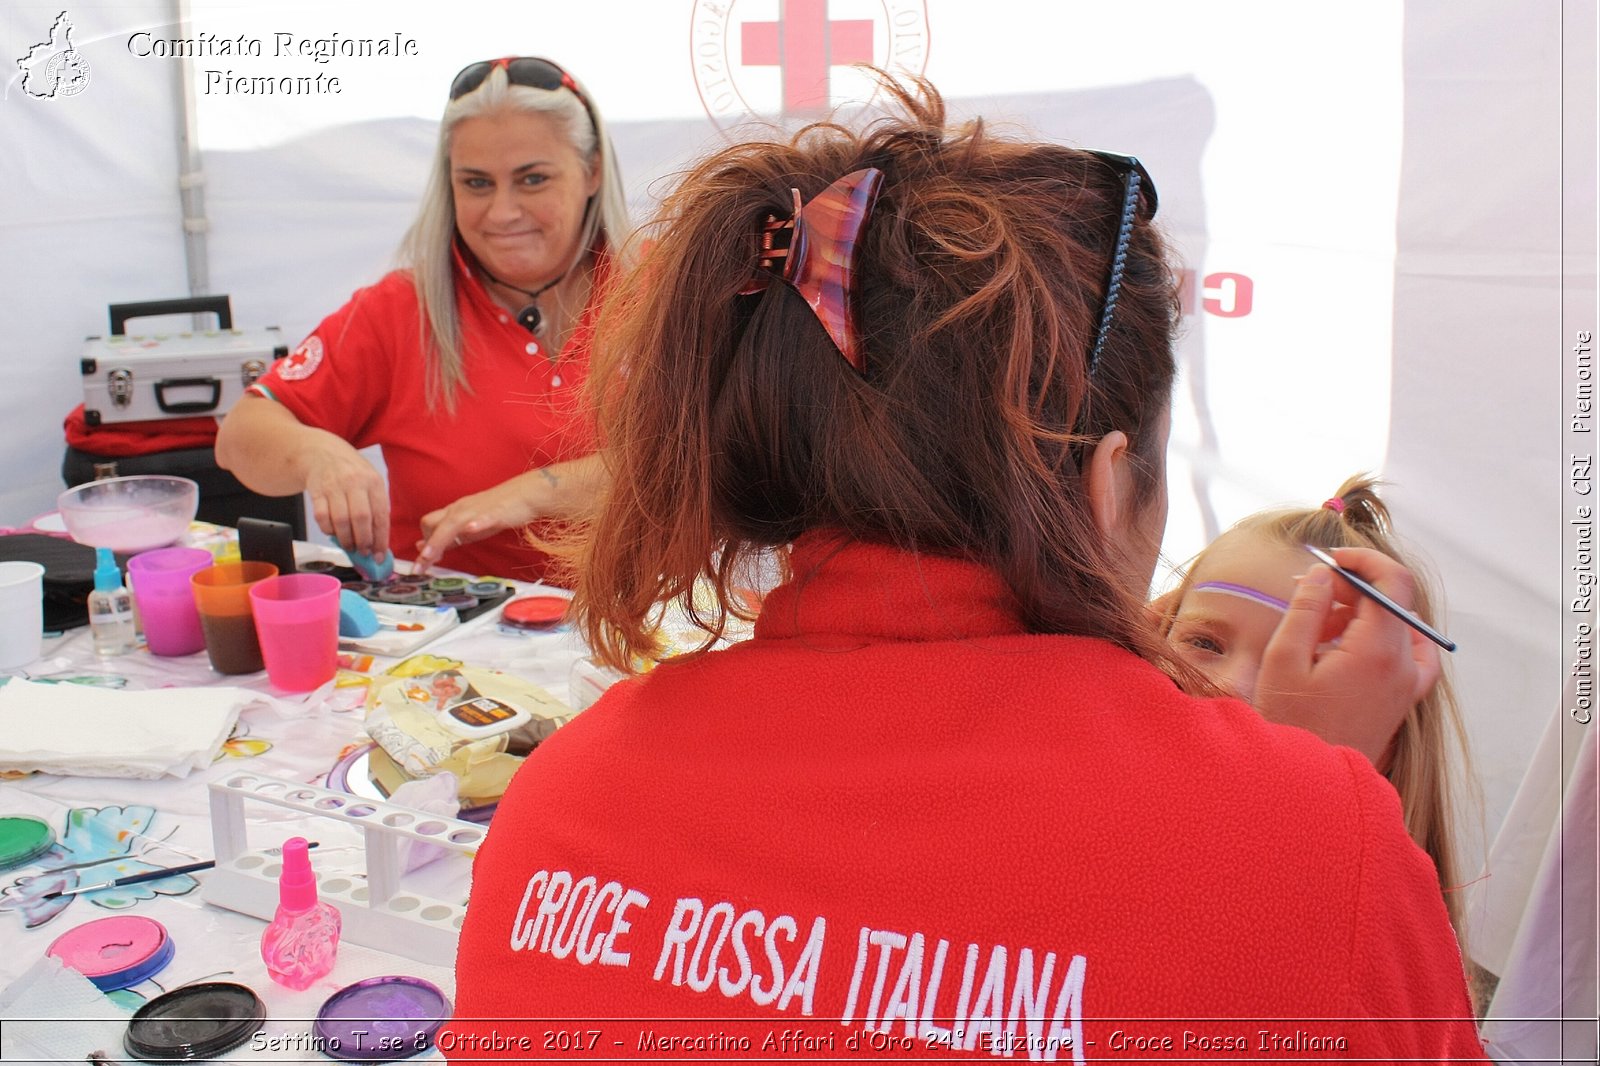 Settimo T.se 8 Ottobre 2017 - Mercatino Affari d'Oro 24 Edizione - Croce Rossa Italiana- Comitato Regionale del Piemonte